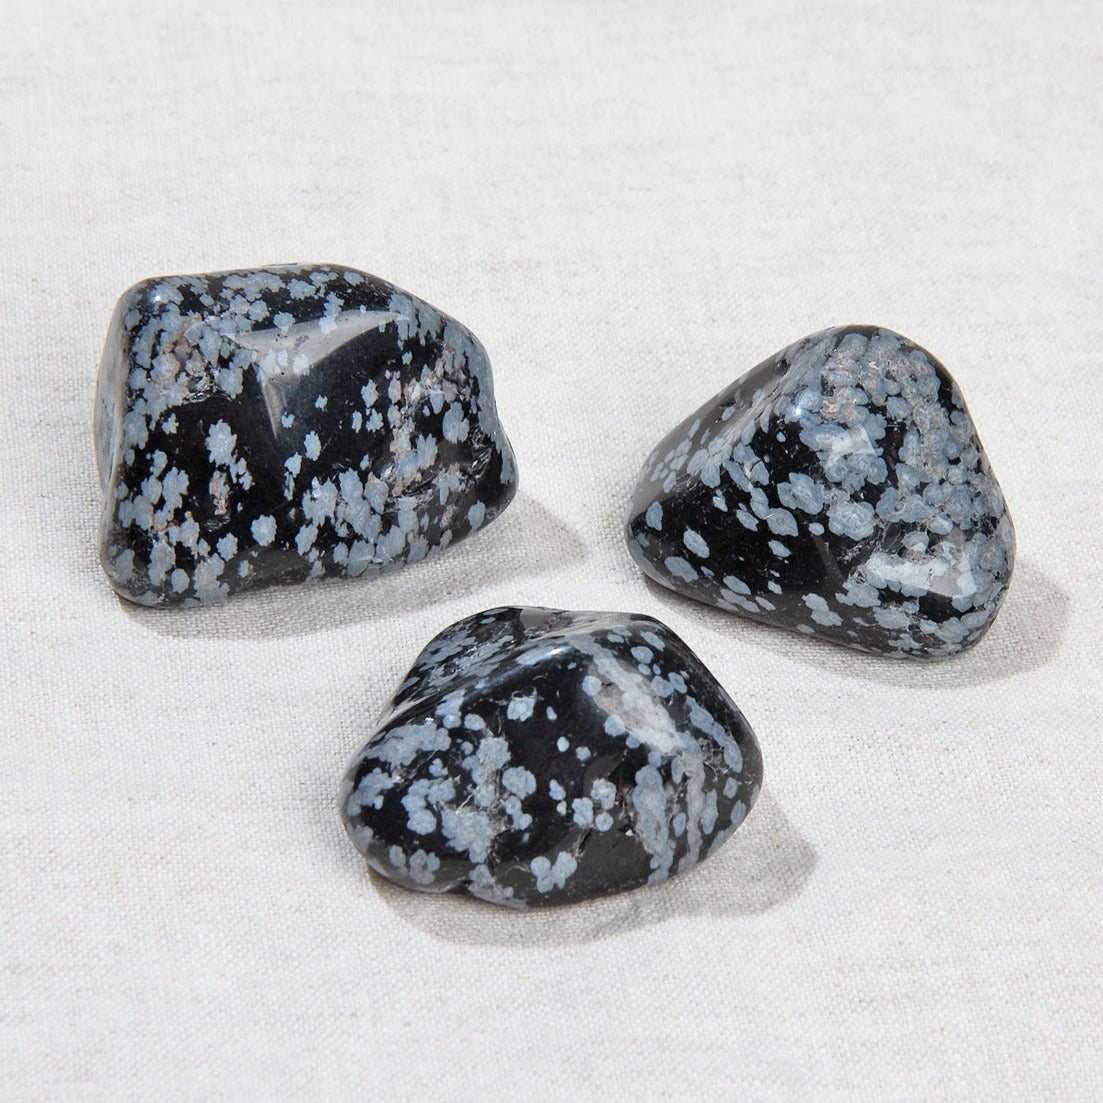 Tumbled Snowflake Obsidian Set Of 3 1 5 2 Tiny Rituals